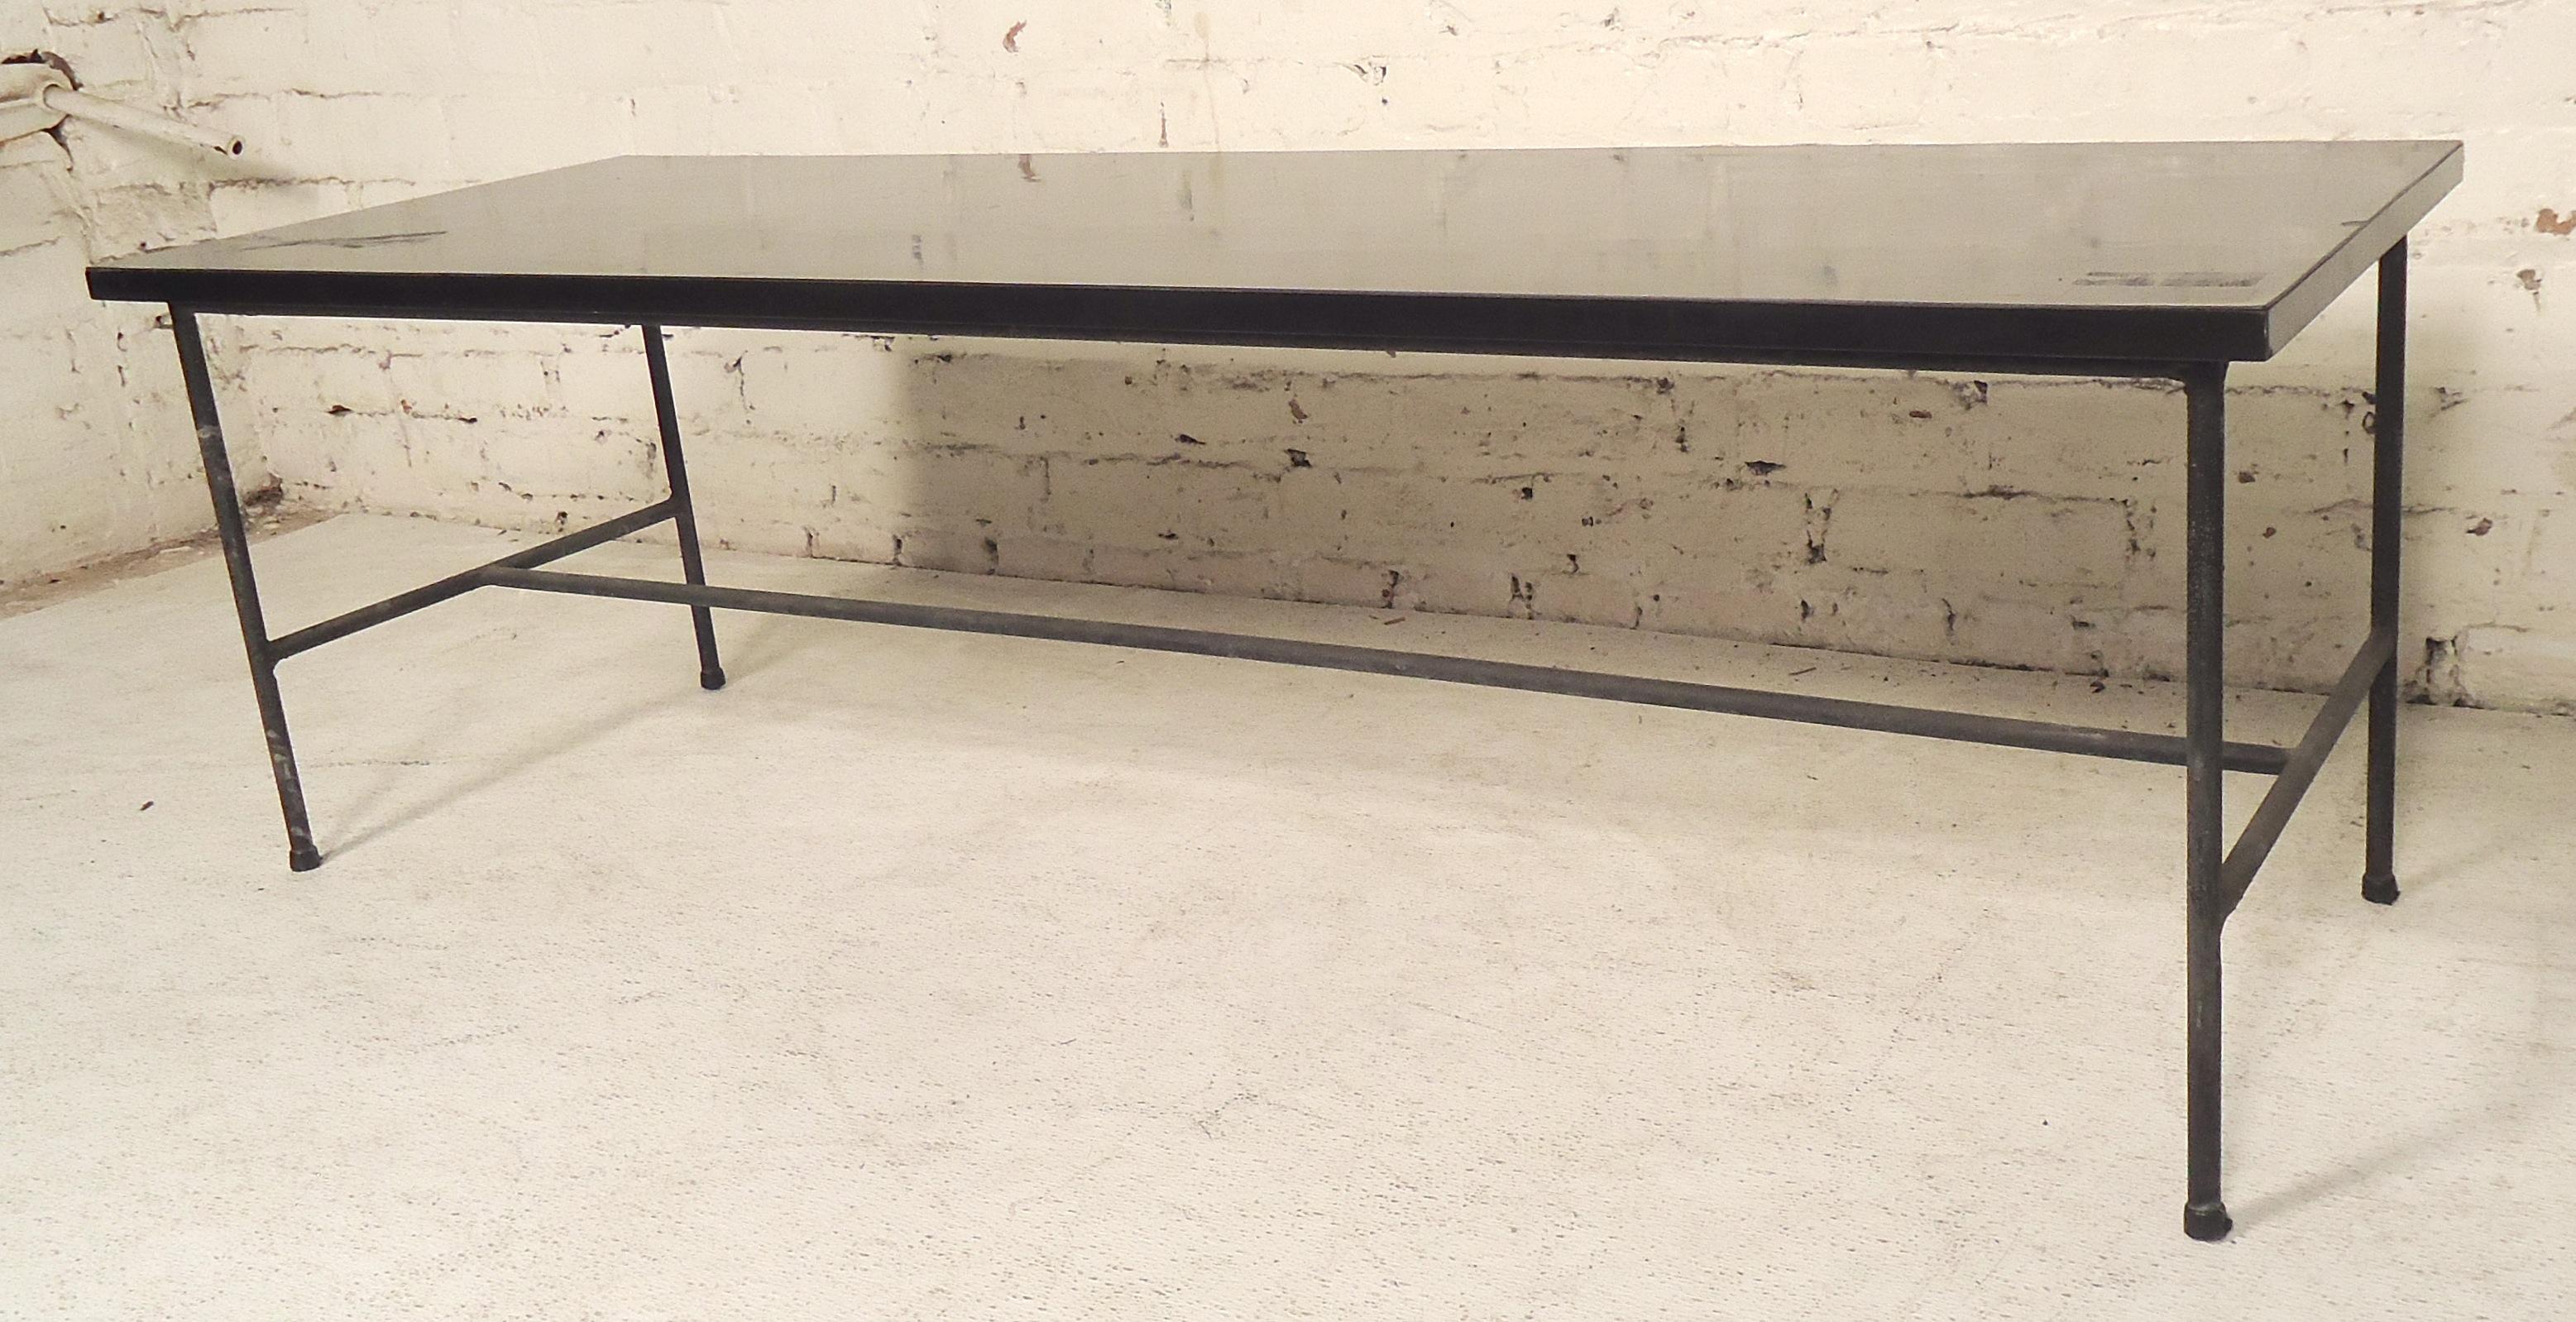 Table noire avec plateau en stratifié et structure en fer dans le style de Pierre Guariche. Idéal pour s'asseoir à l'entrée.

(Veuillez confirmer l'emplacement de l'article - NY ou NJ - avec le concessionnaire).
 